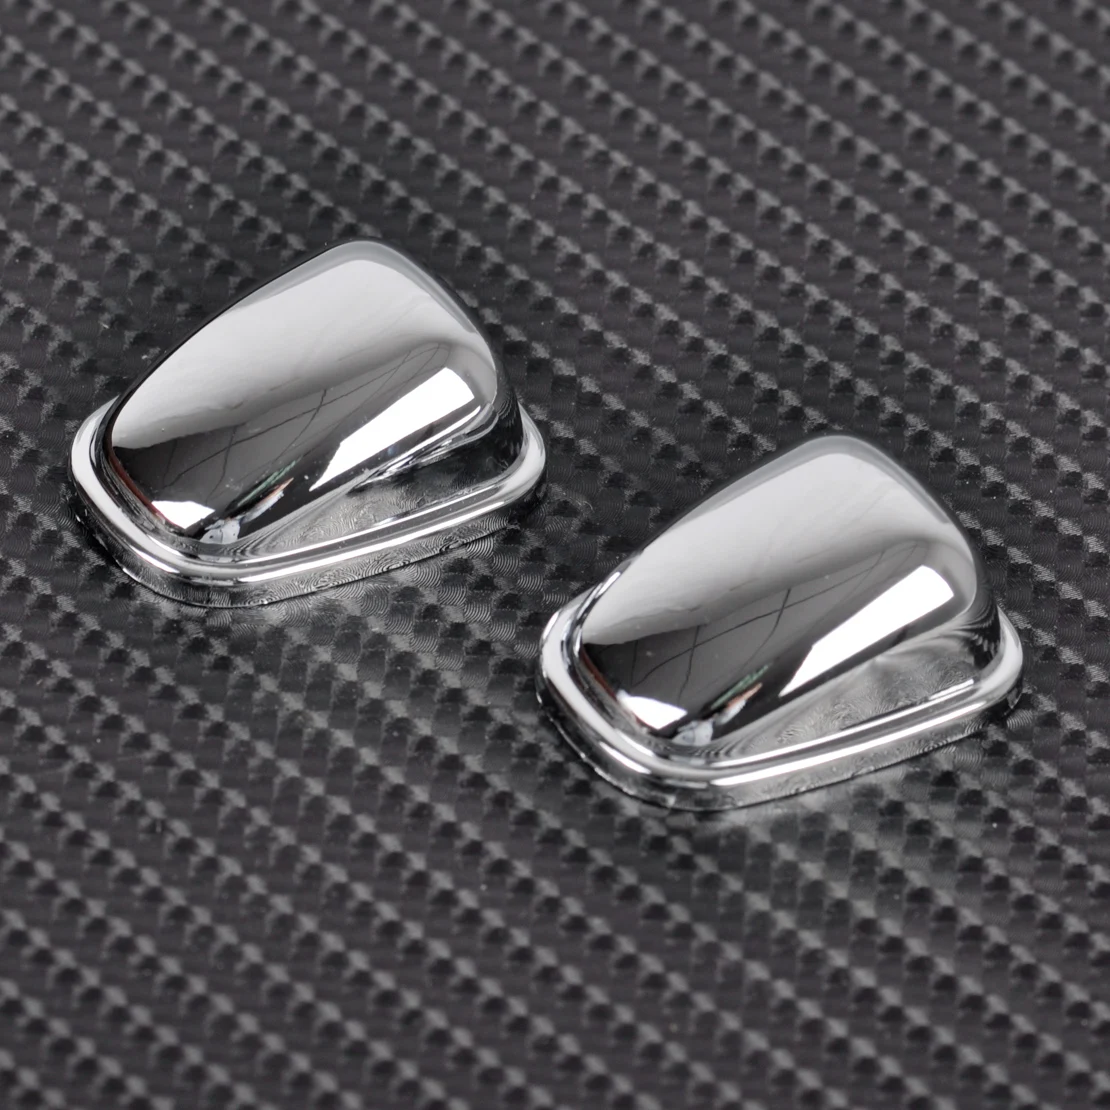 DWCX 2 шт./компл. автомобиля Высокое качество хром стеклоомывателя форсунки накладка Стикеры подходит для Ford Ecosport 2013